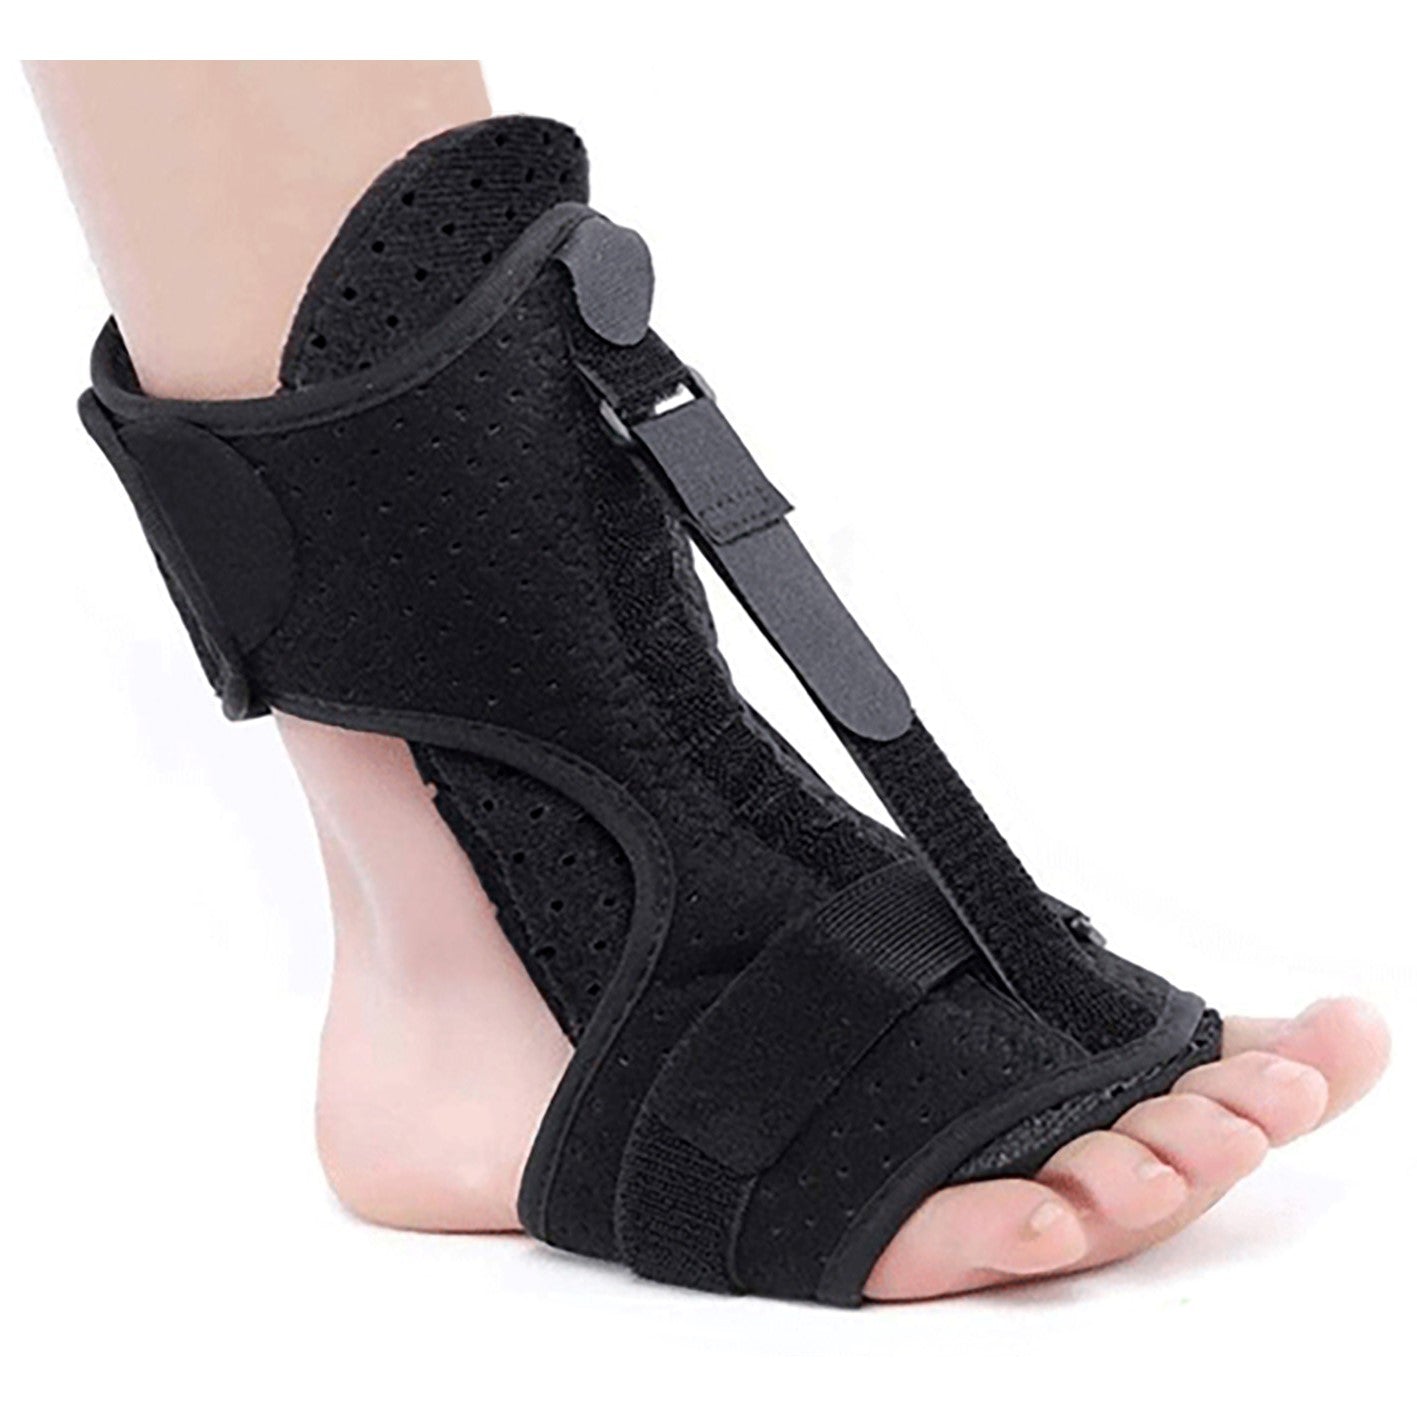 Plantar Fasciitis Night Splint Drop Foot Brace - New & Improved